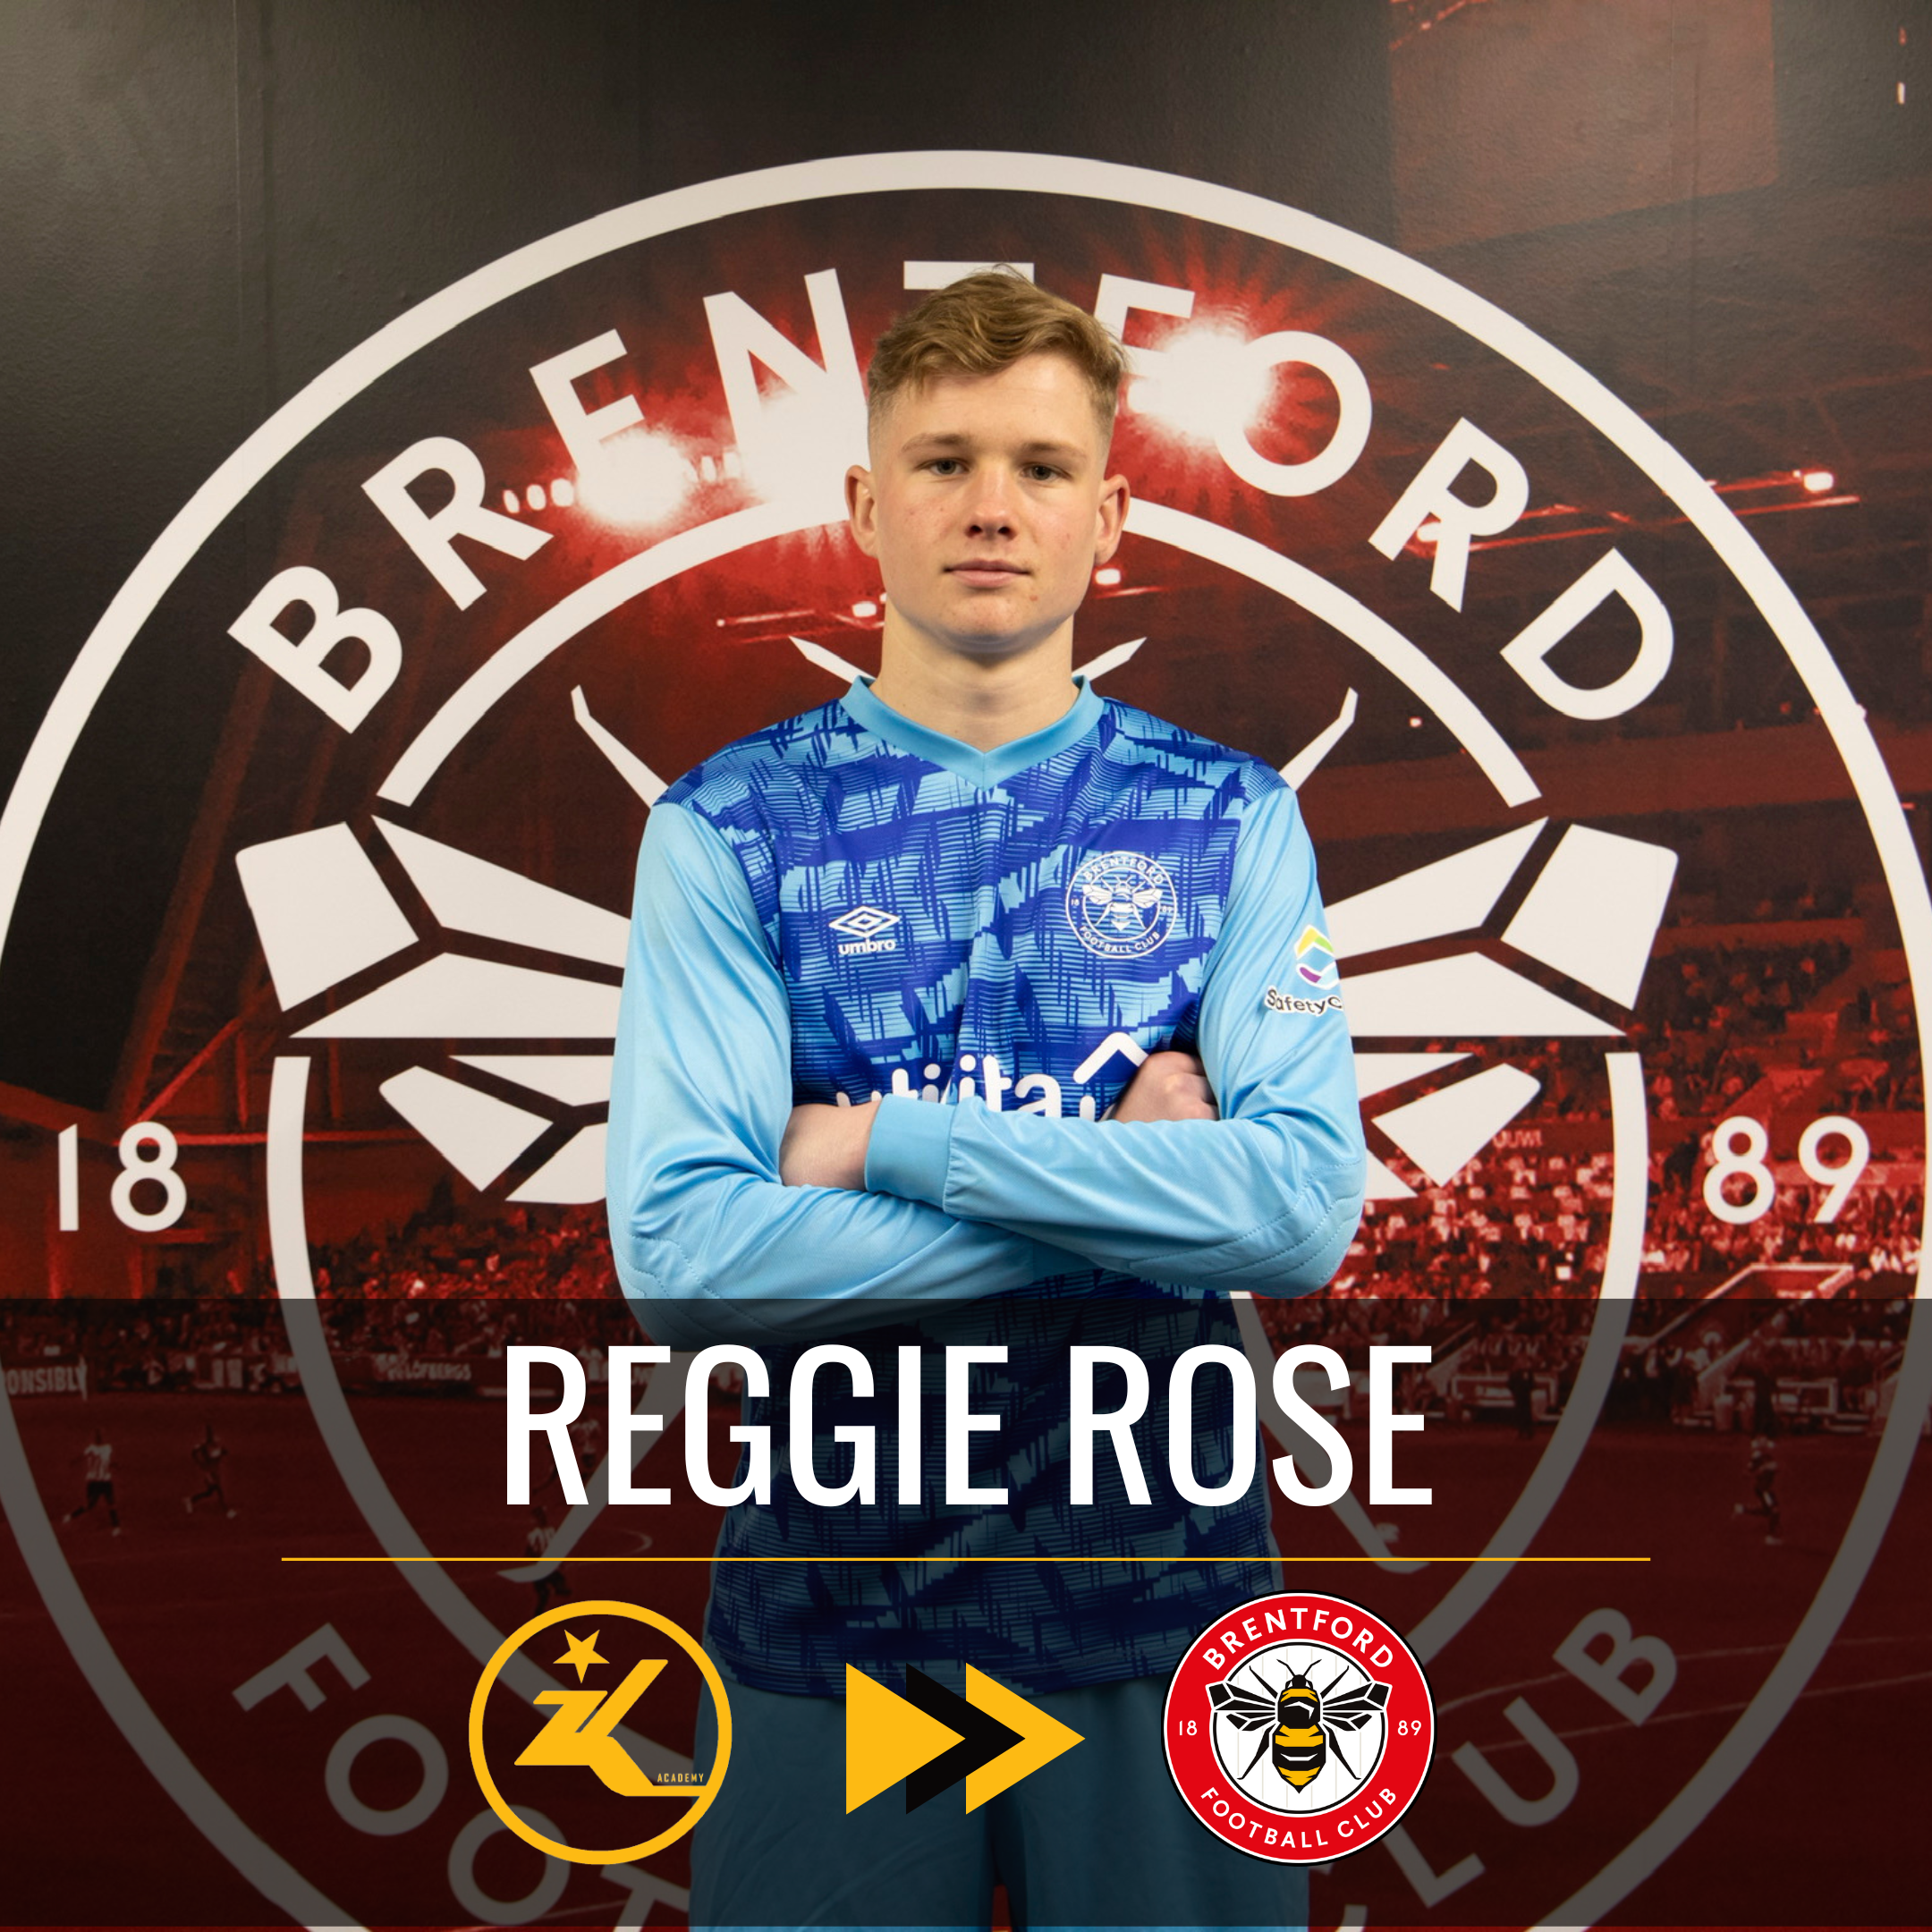 Reggie Rose signs for Brentford FC